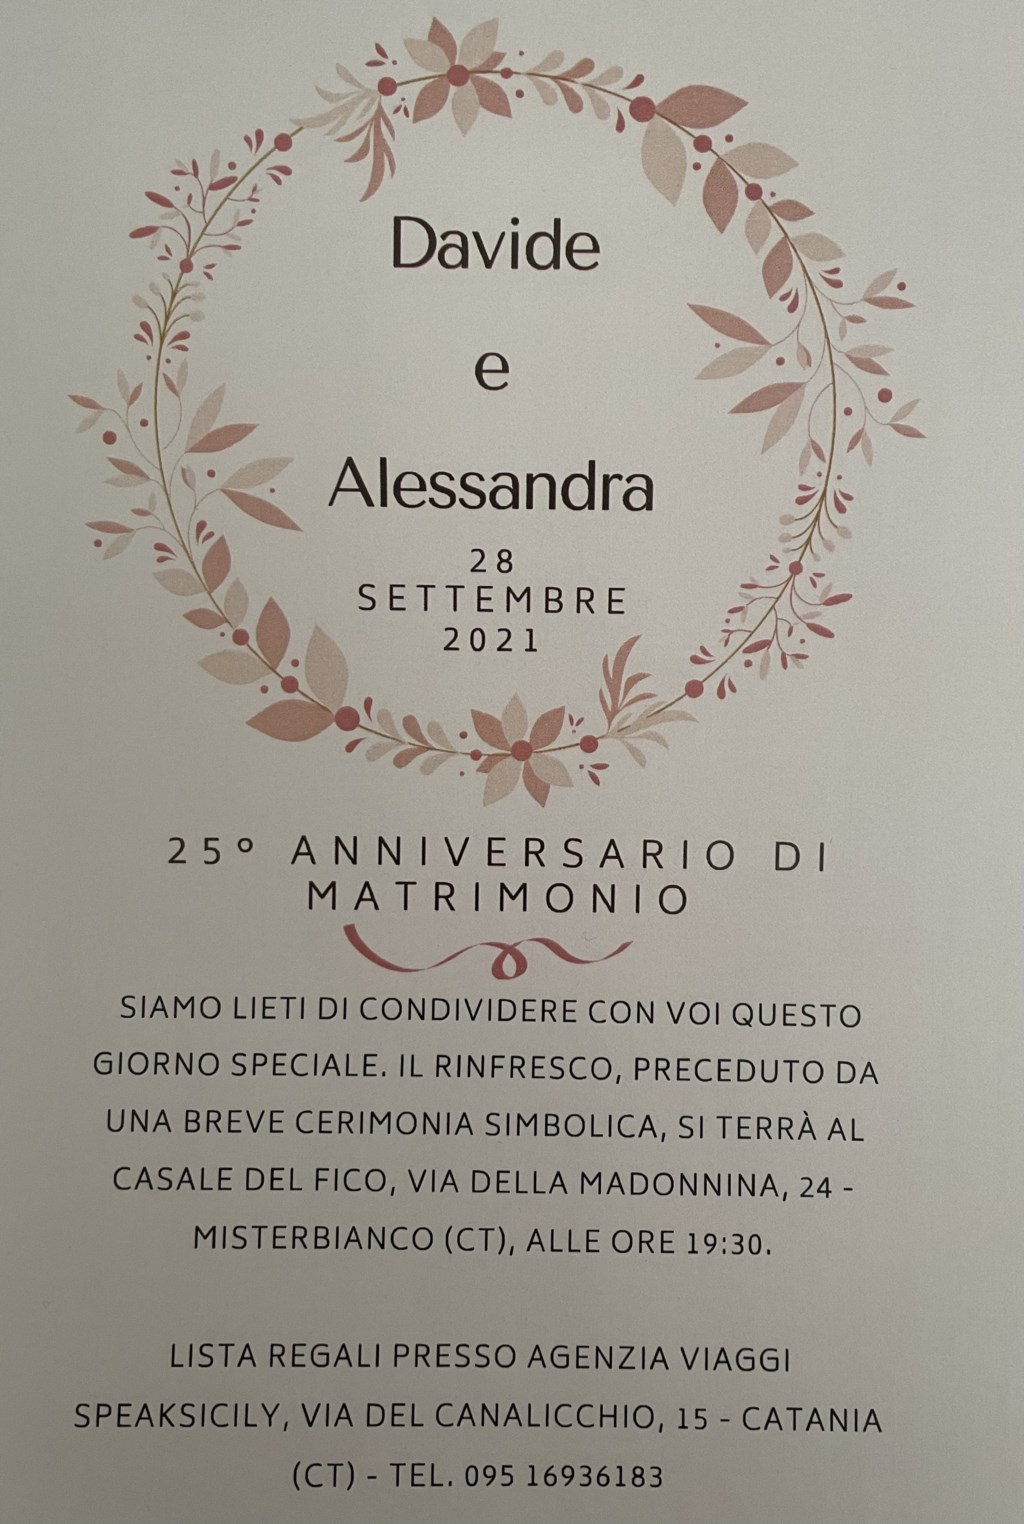 Anniversario Davide e Alessandra